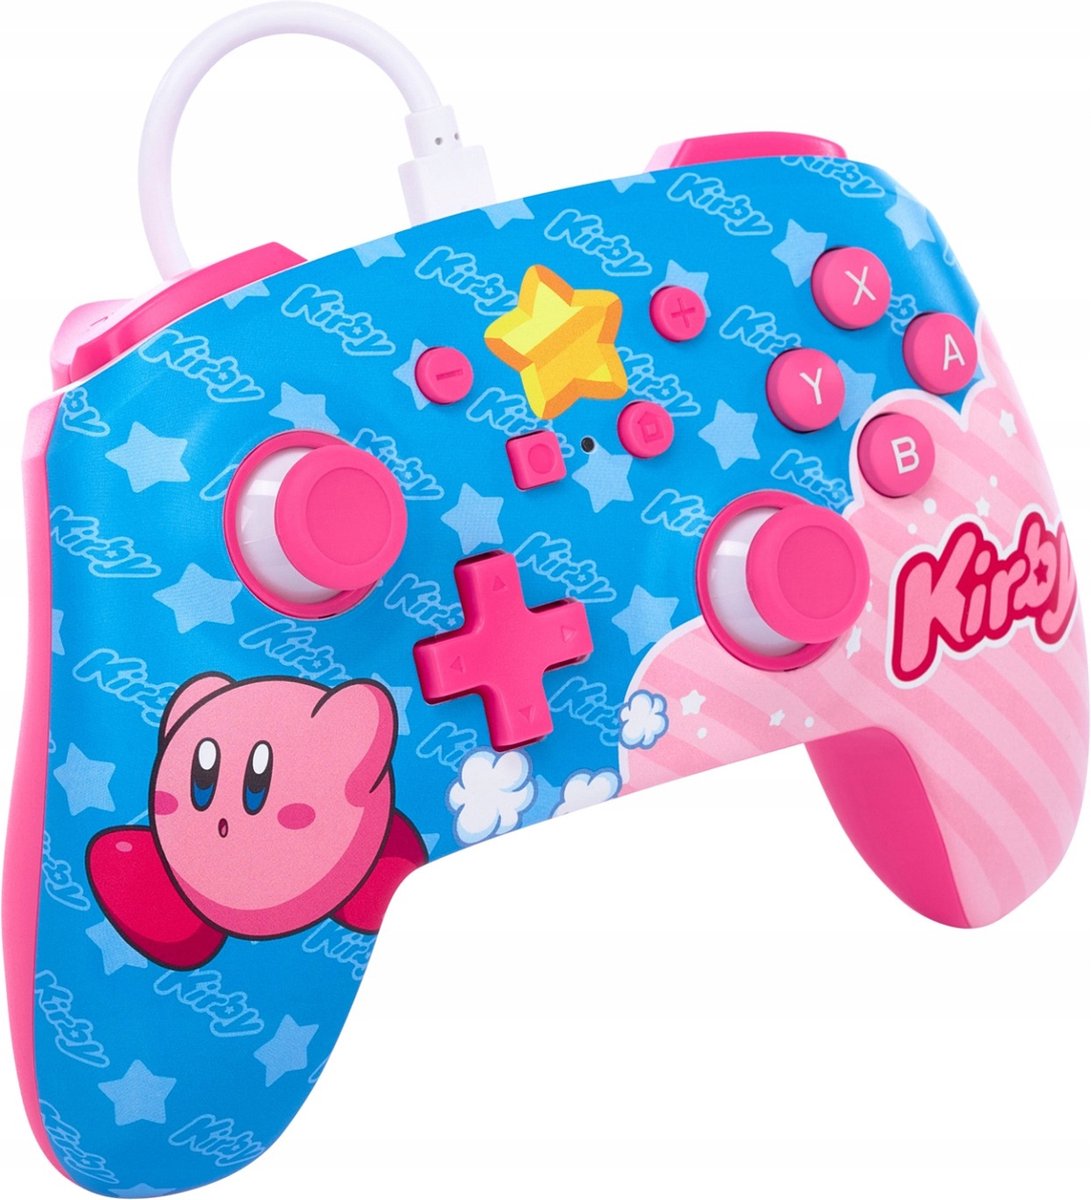 PowerA geavanceerde bedrade controller voor Nintendo Switch - Kirby